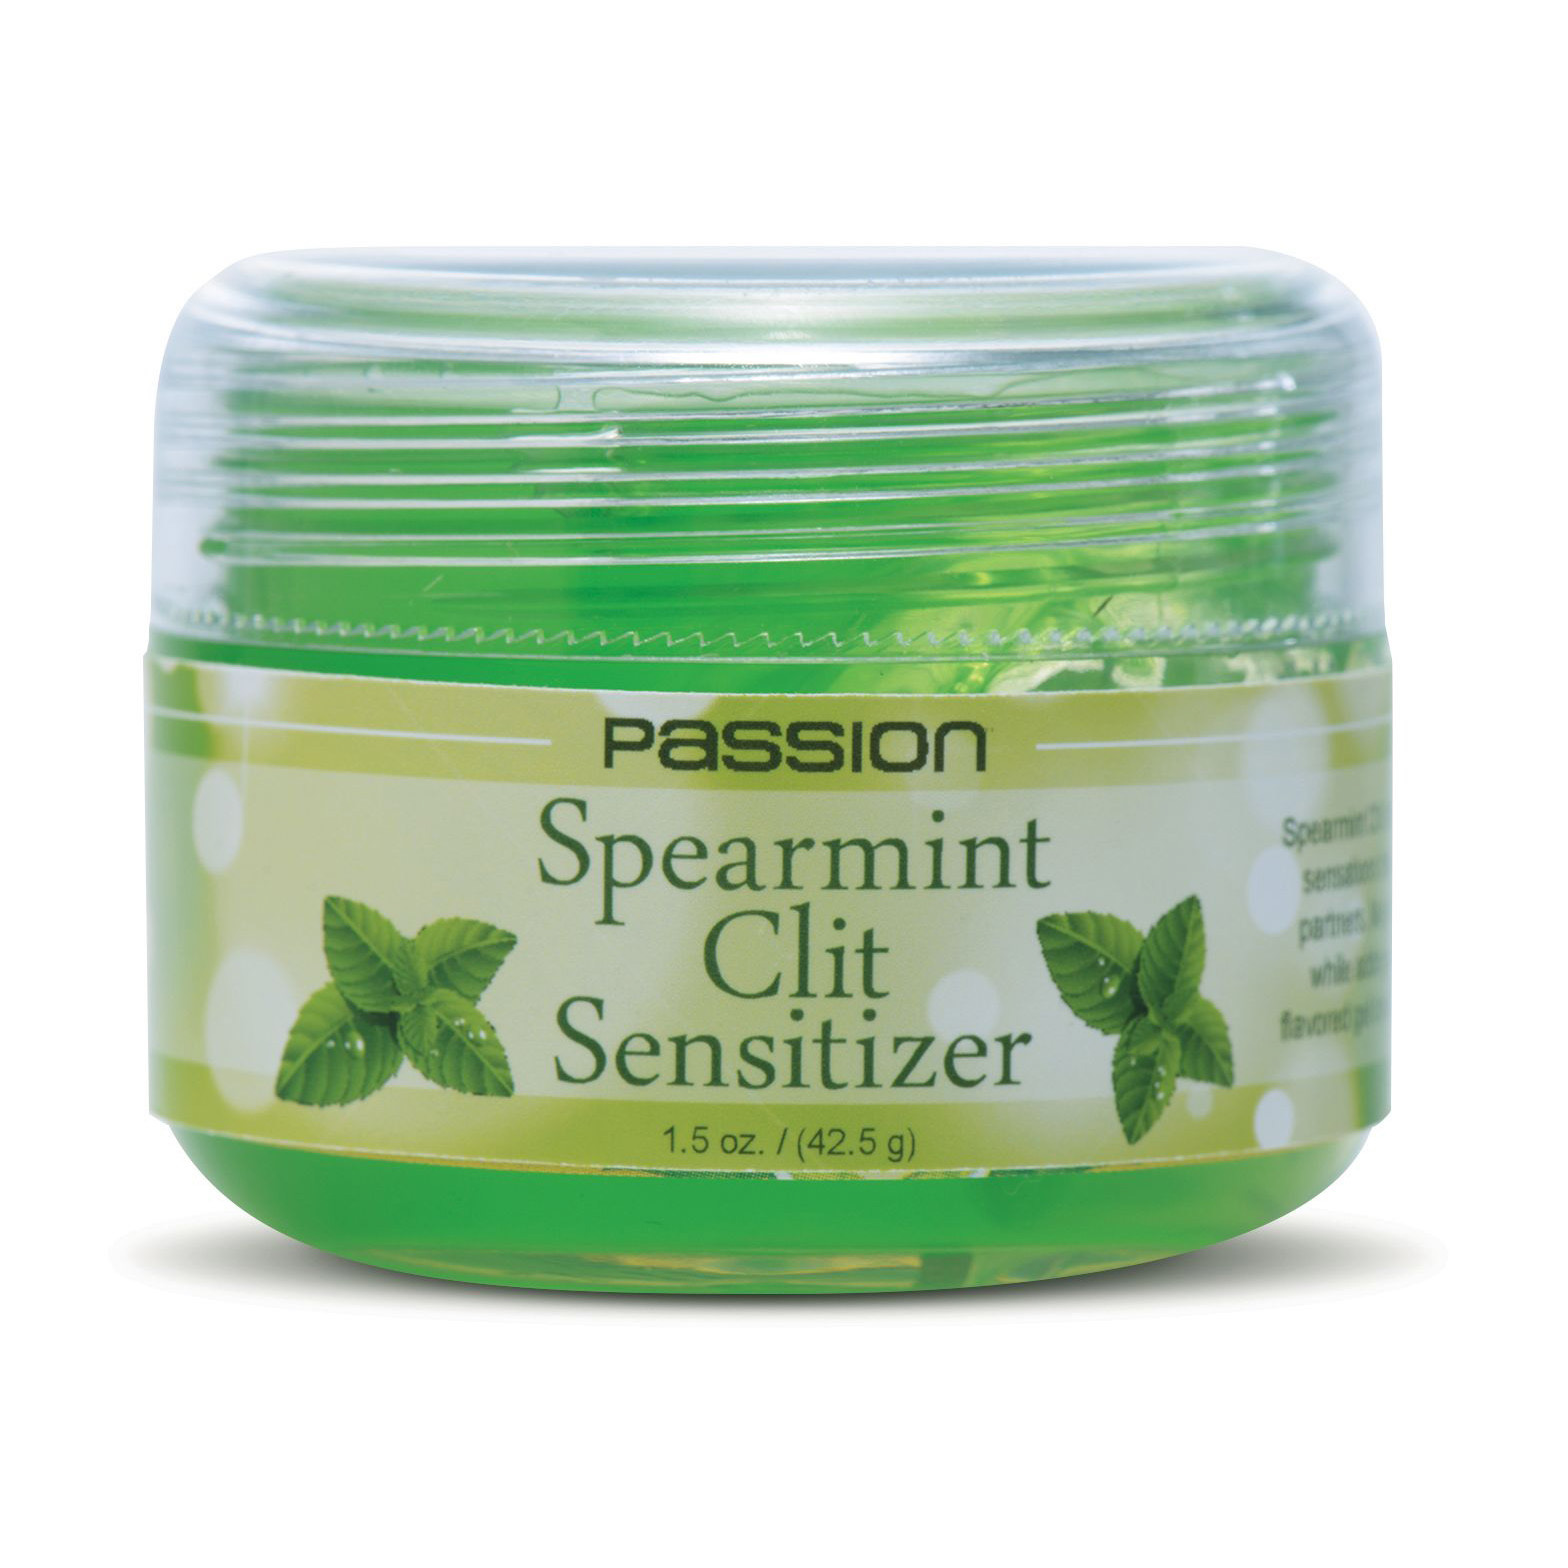 Passion Spearmint Clit Sensitizer – 42.5g